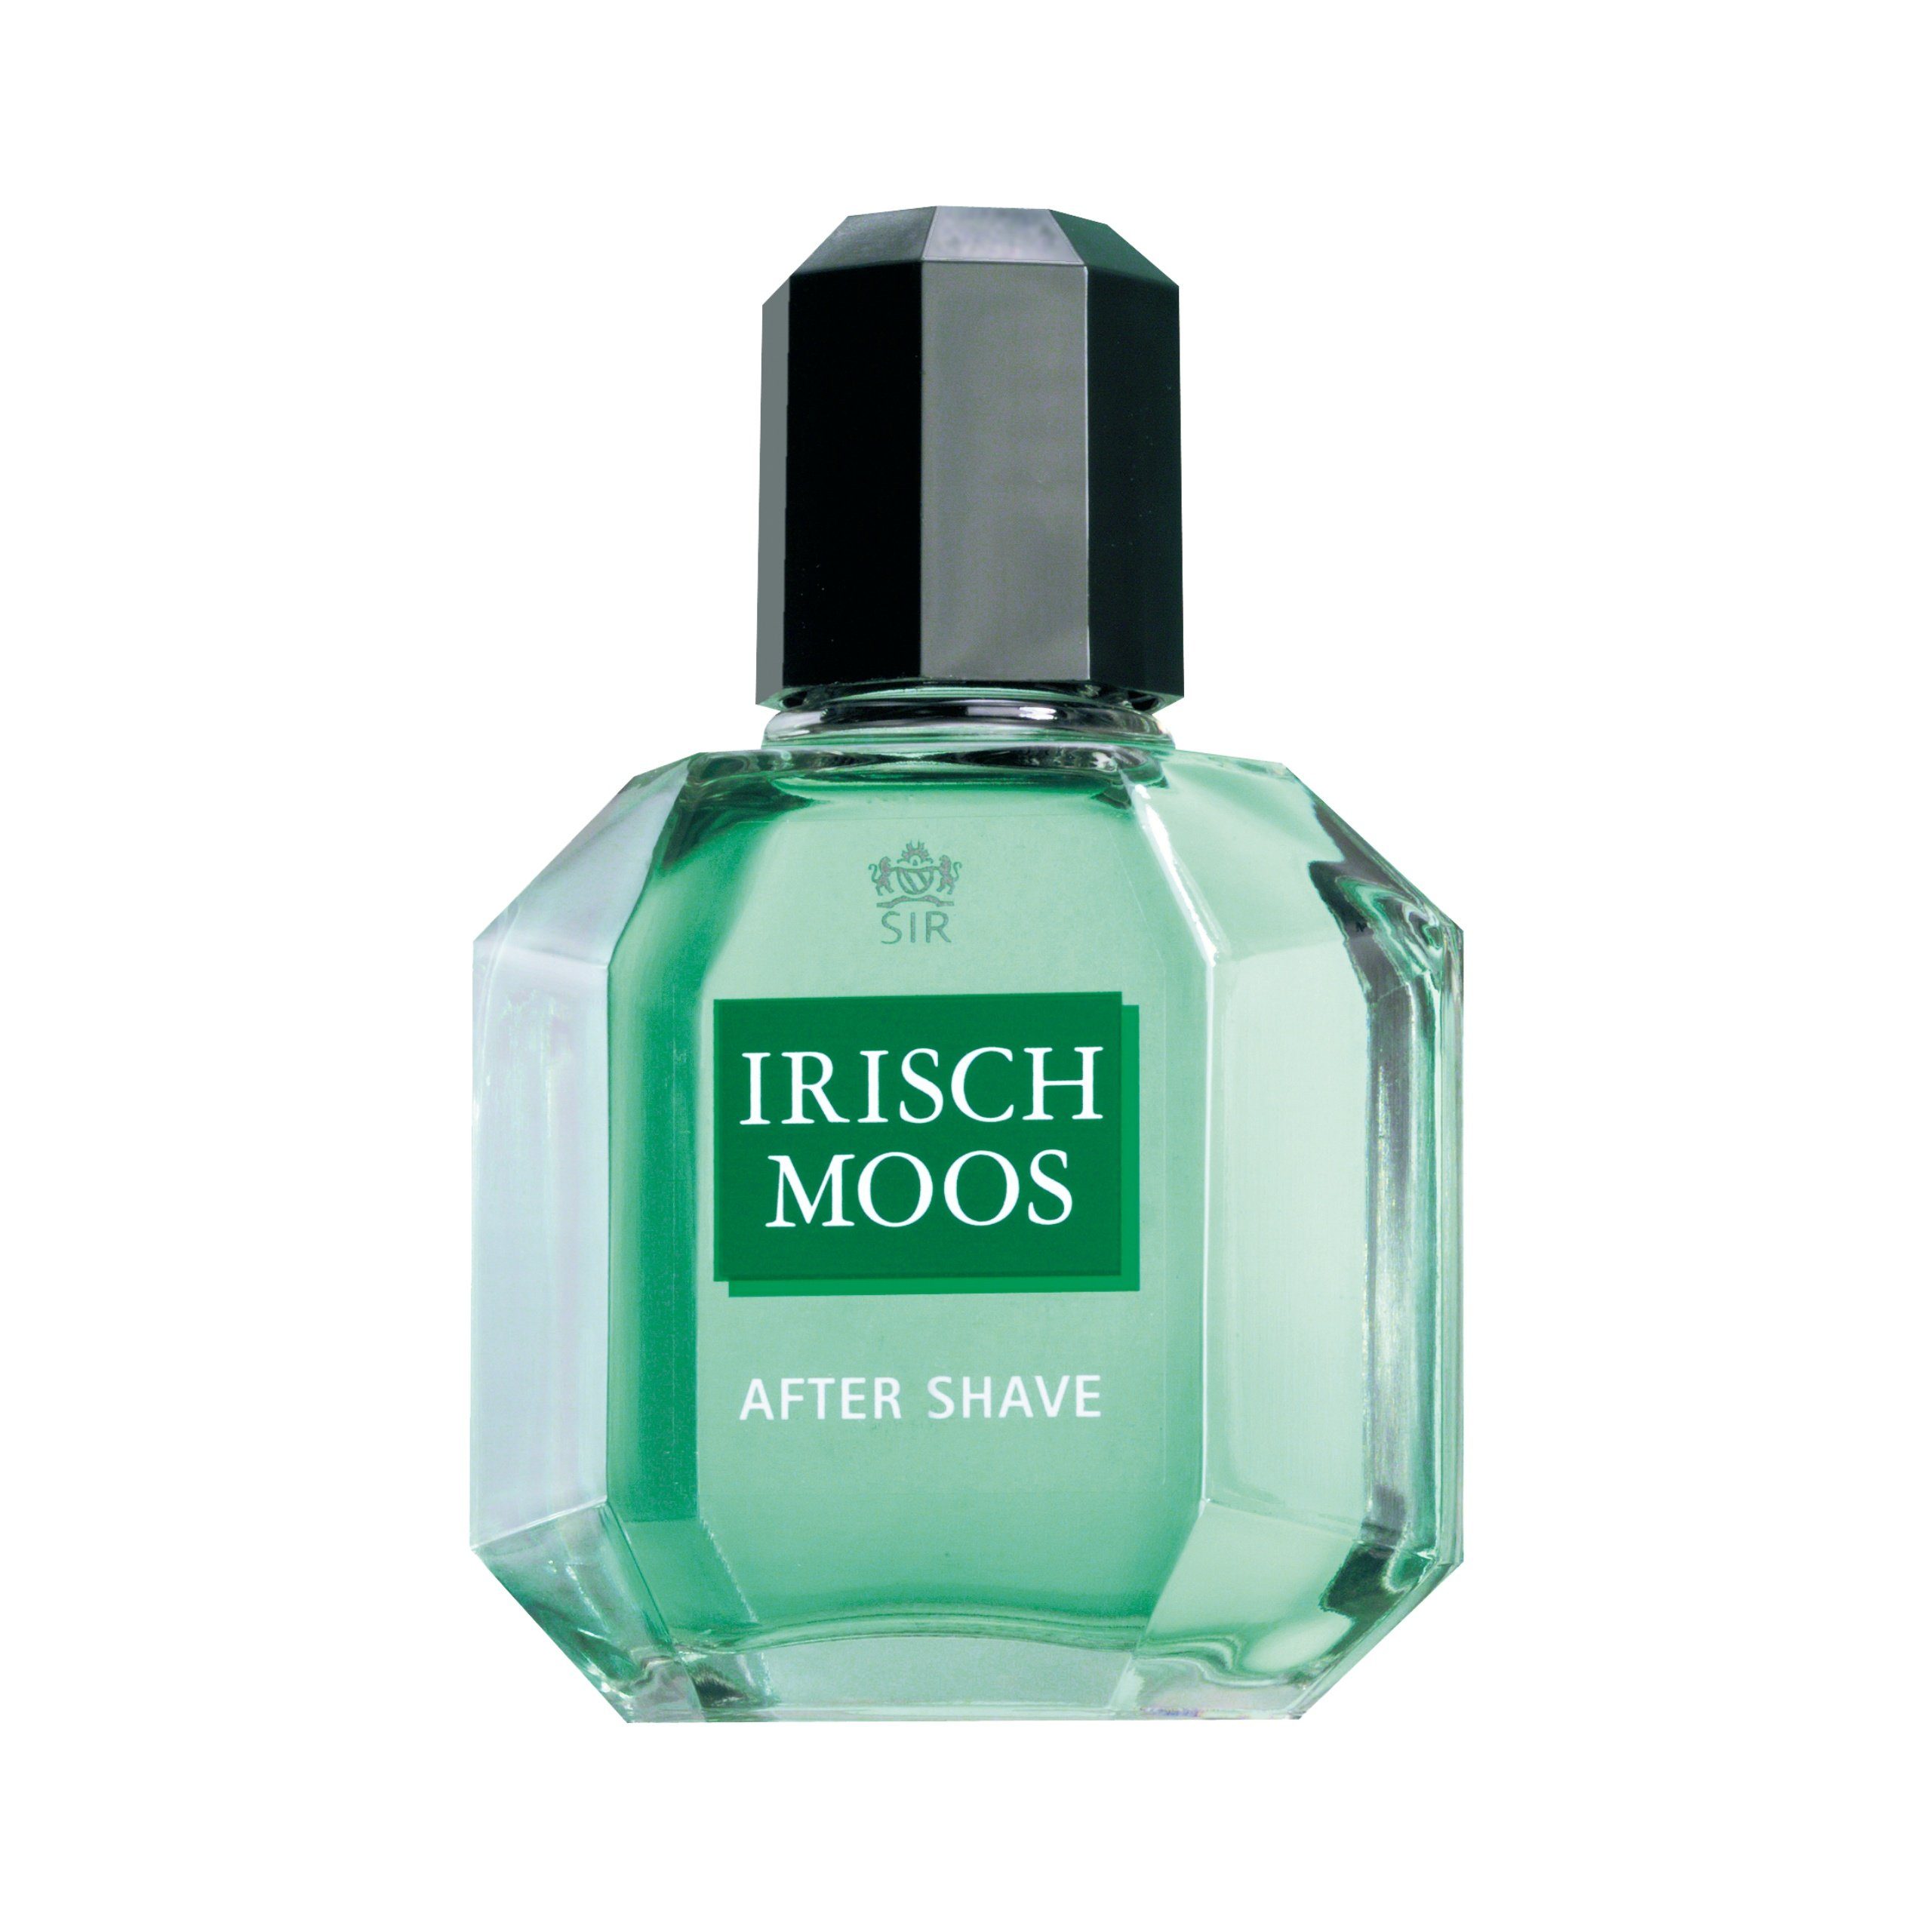 Sir Irisch Moos Gesichts-Reinigungslotion SIR IRISCH MOOS After Shave Lotion 100 ml